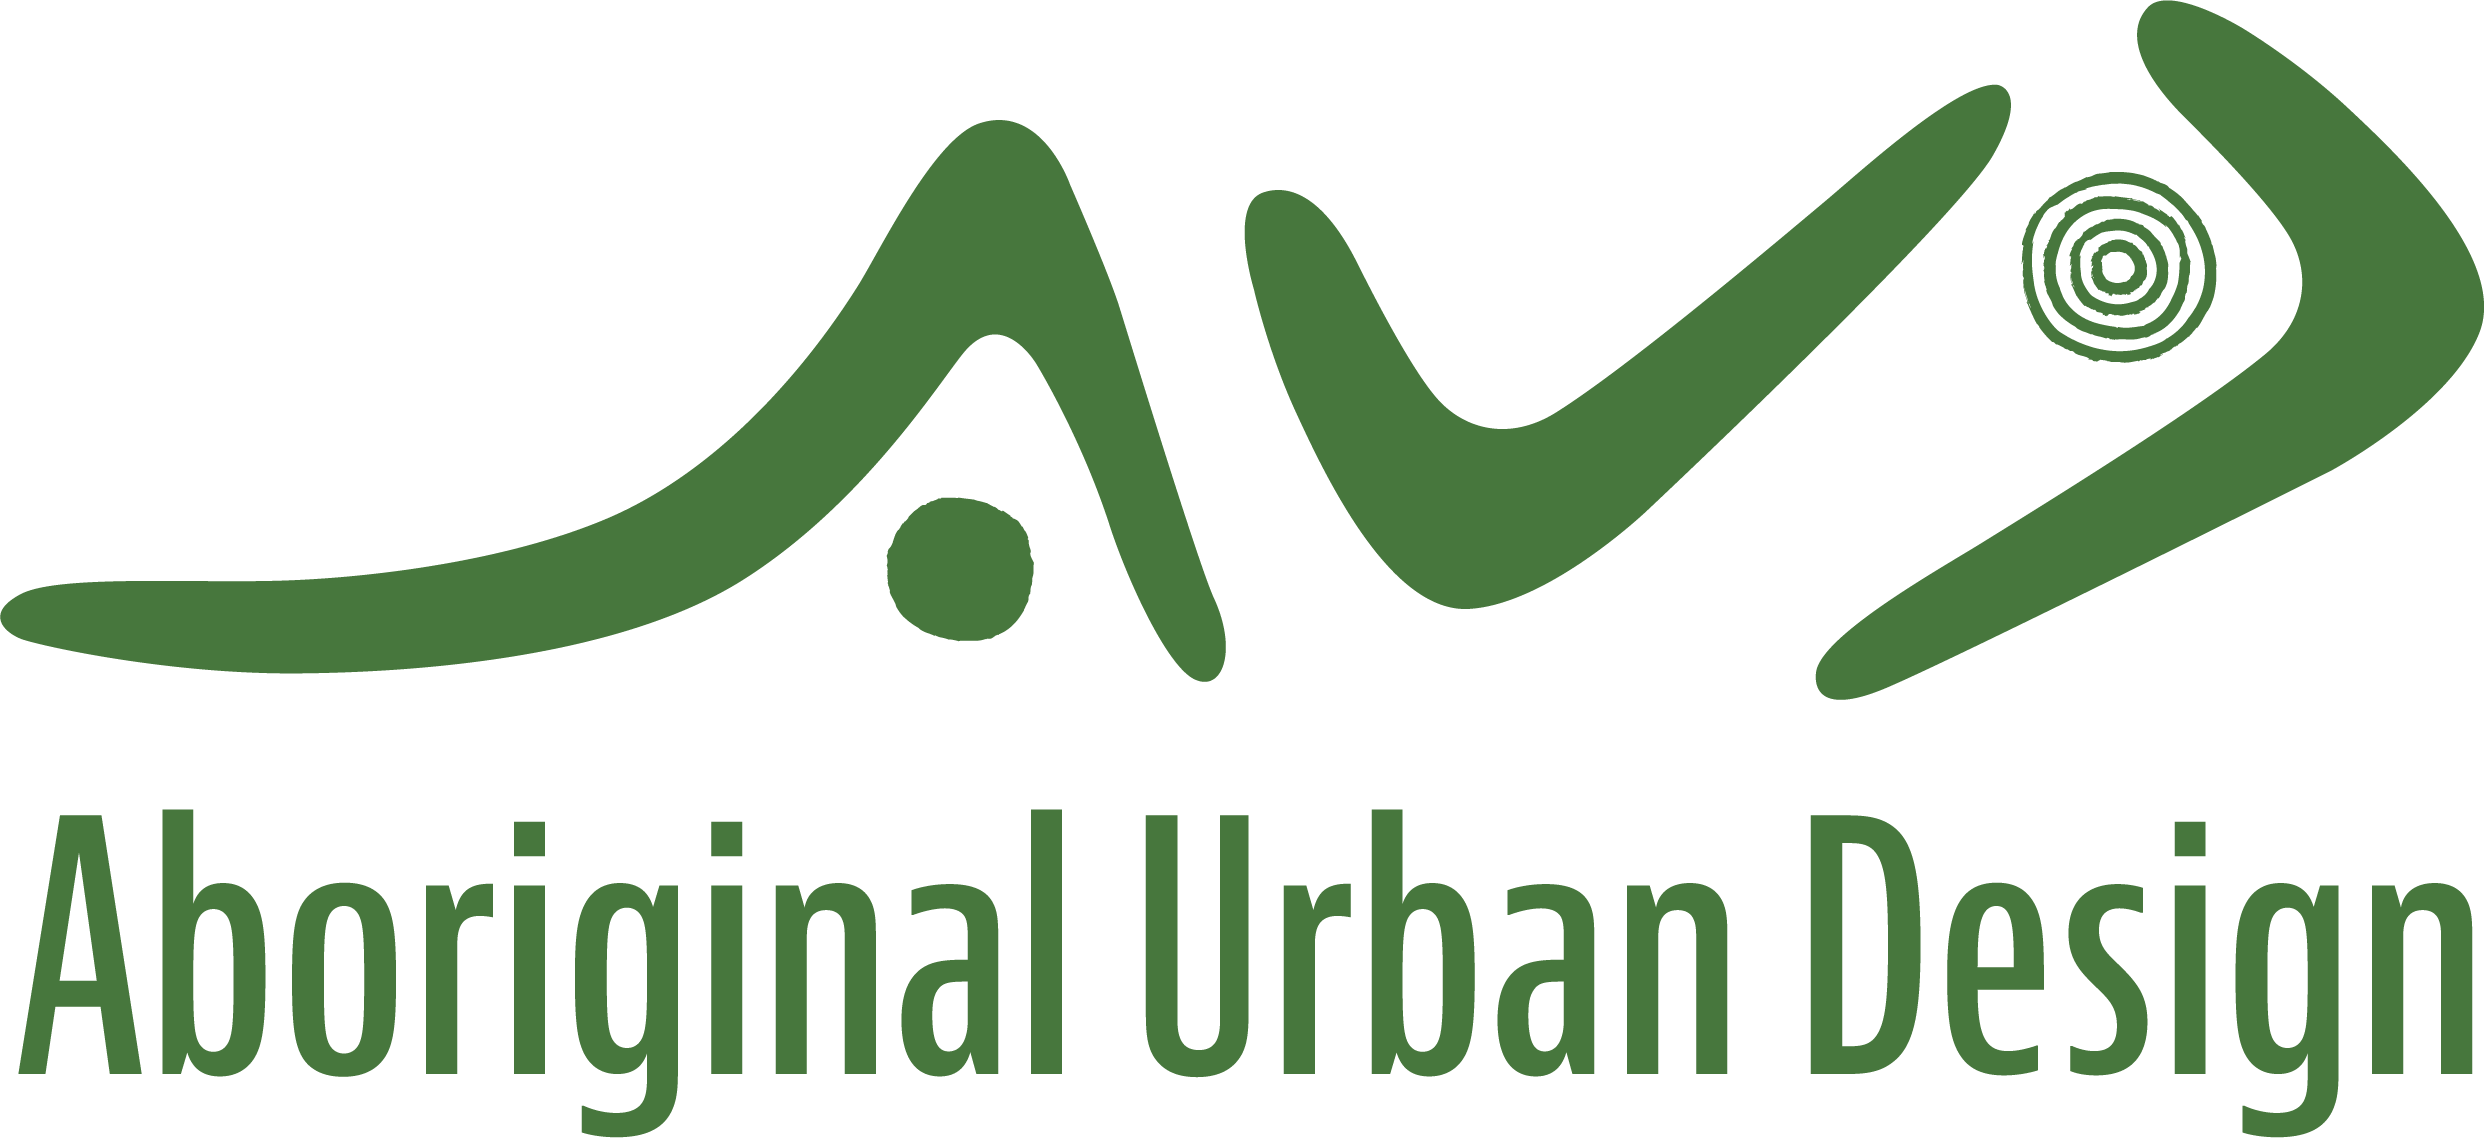 Aboriginal Urban Design icon